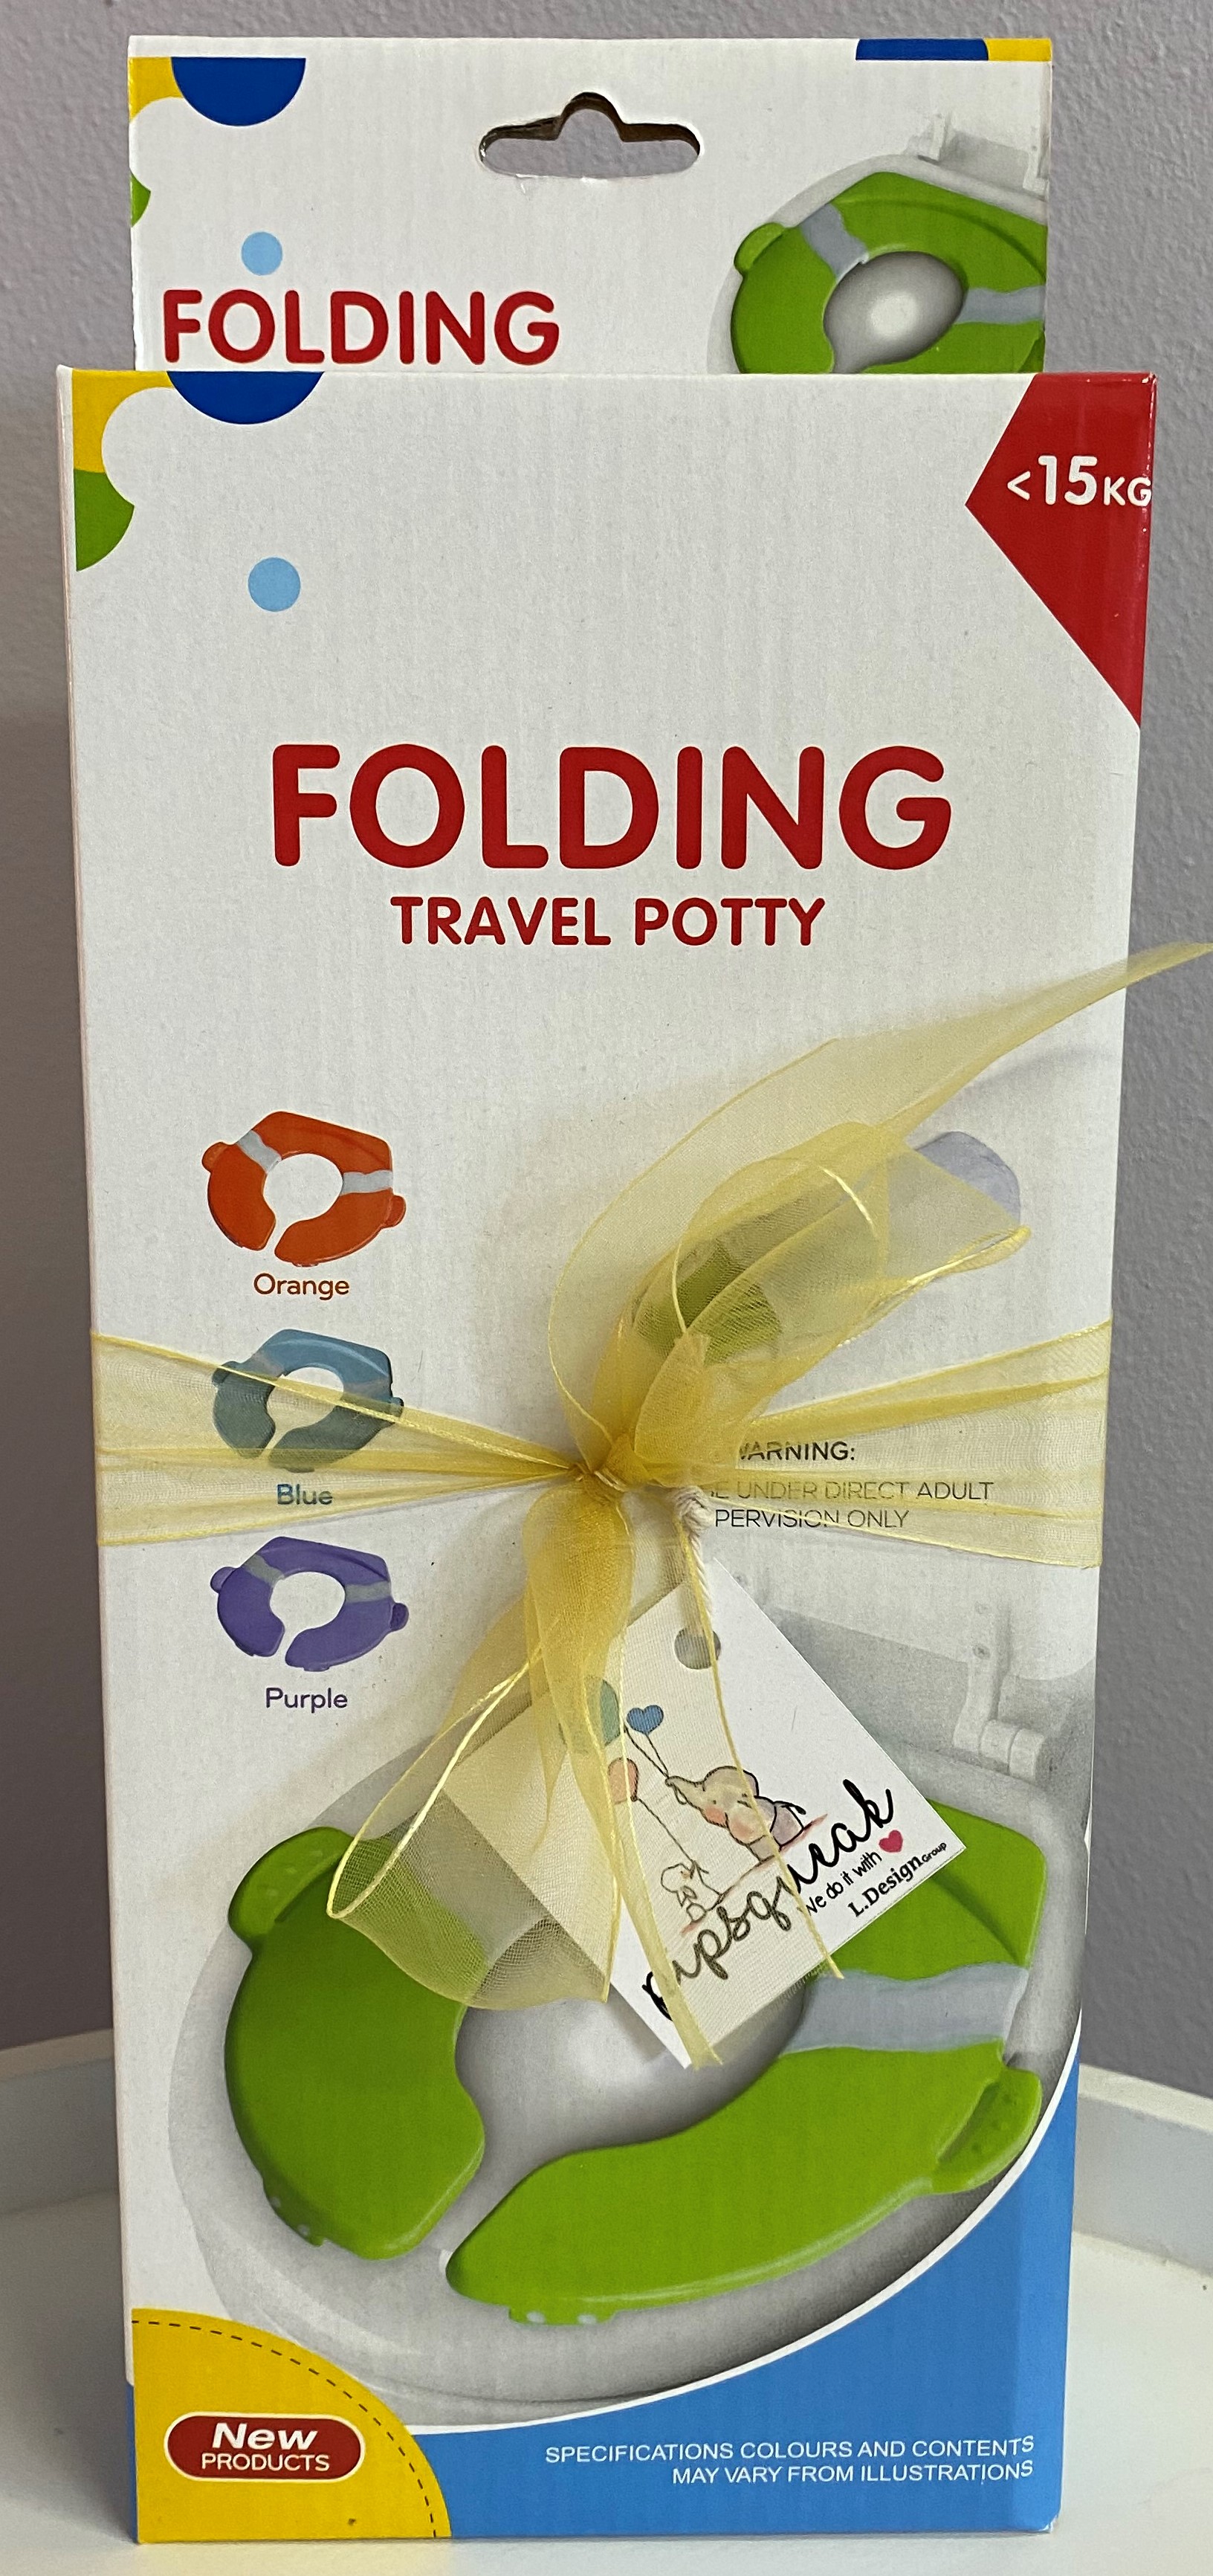 folding-traveling-potty